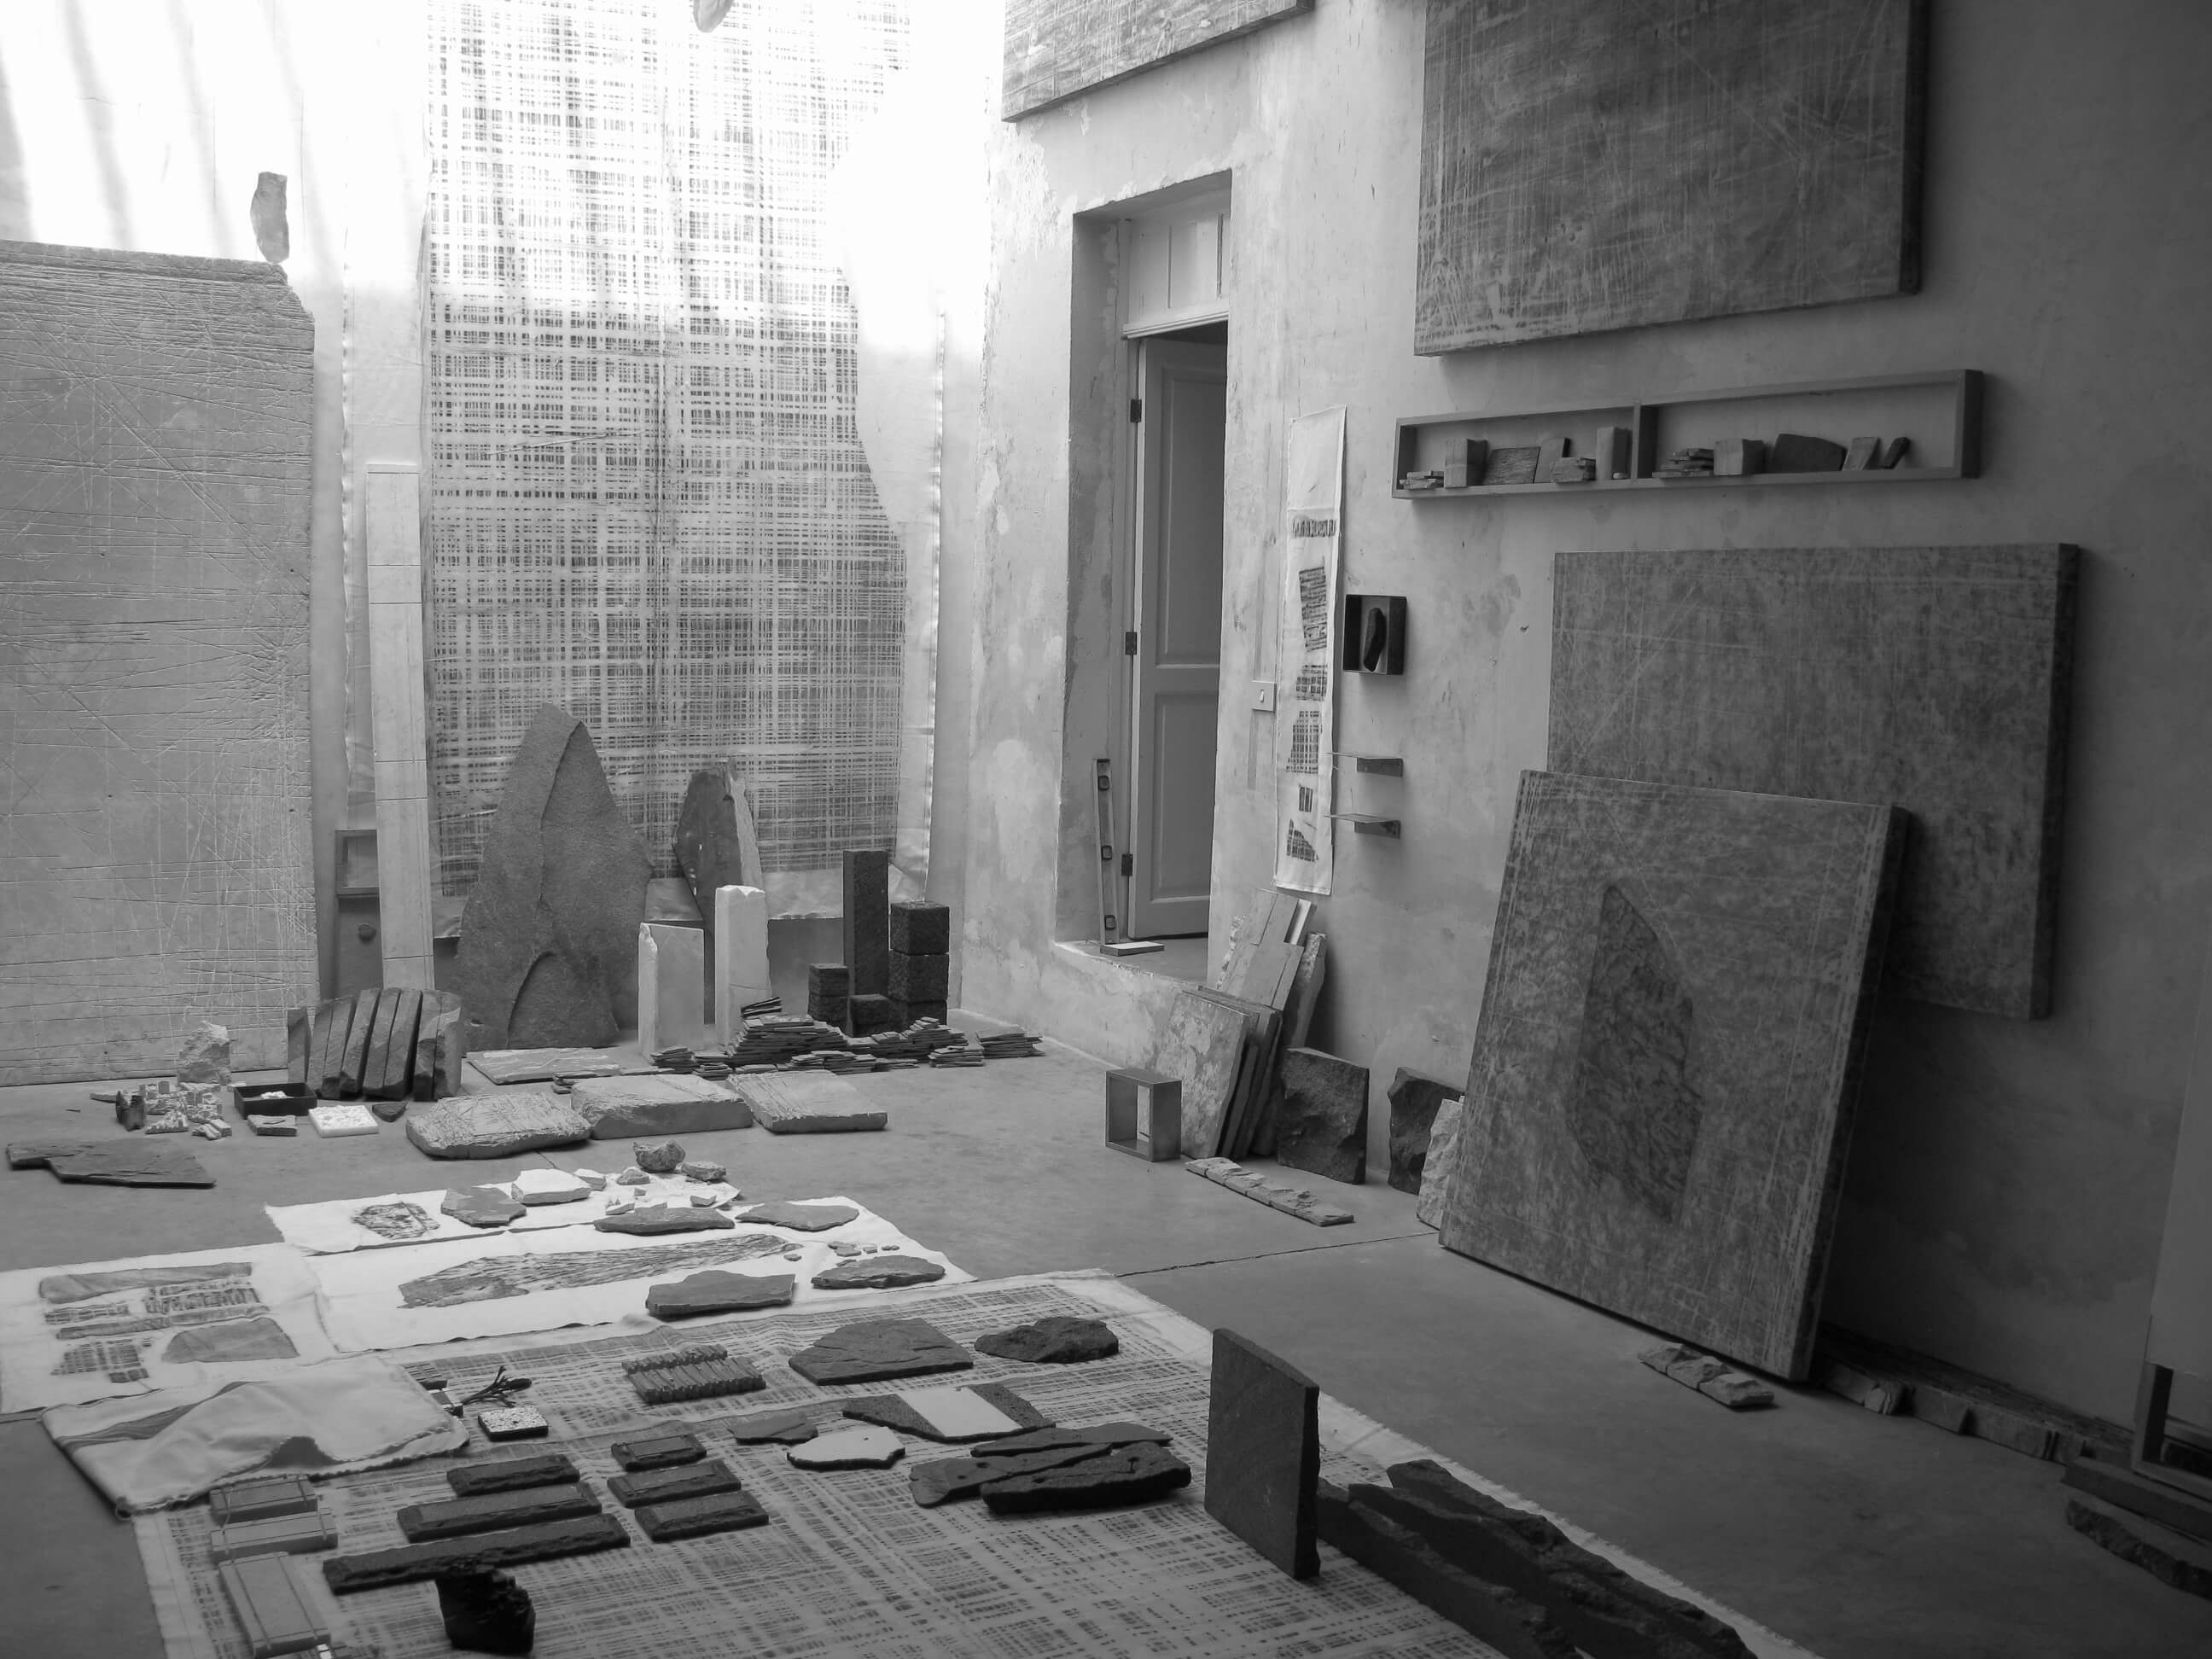 Taller José Alvarado 24 A. Vista de instalación en taller | Perla Krauze. Materia lítica: Memoria/Procesos/Acumulaciones | Museo Amparo, Puebla